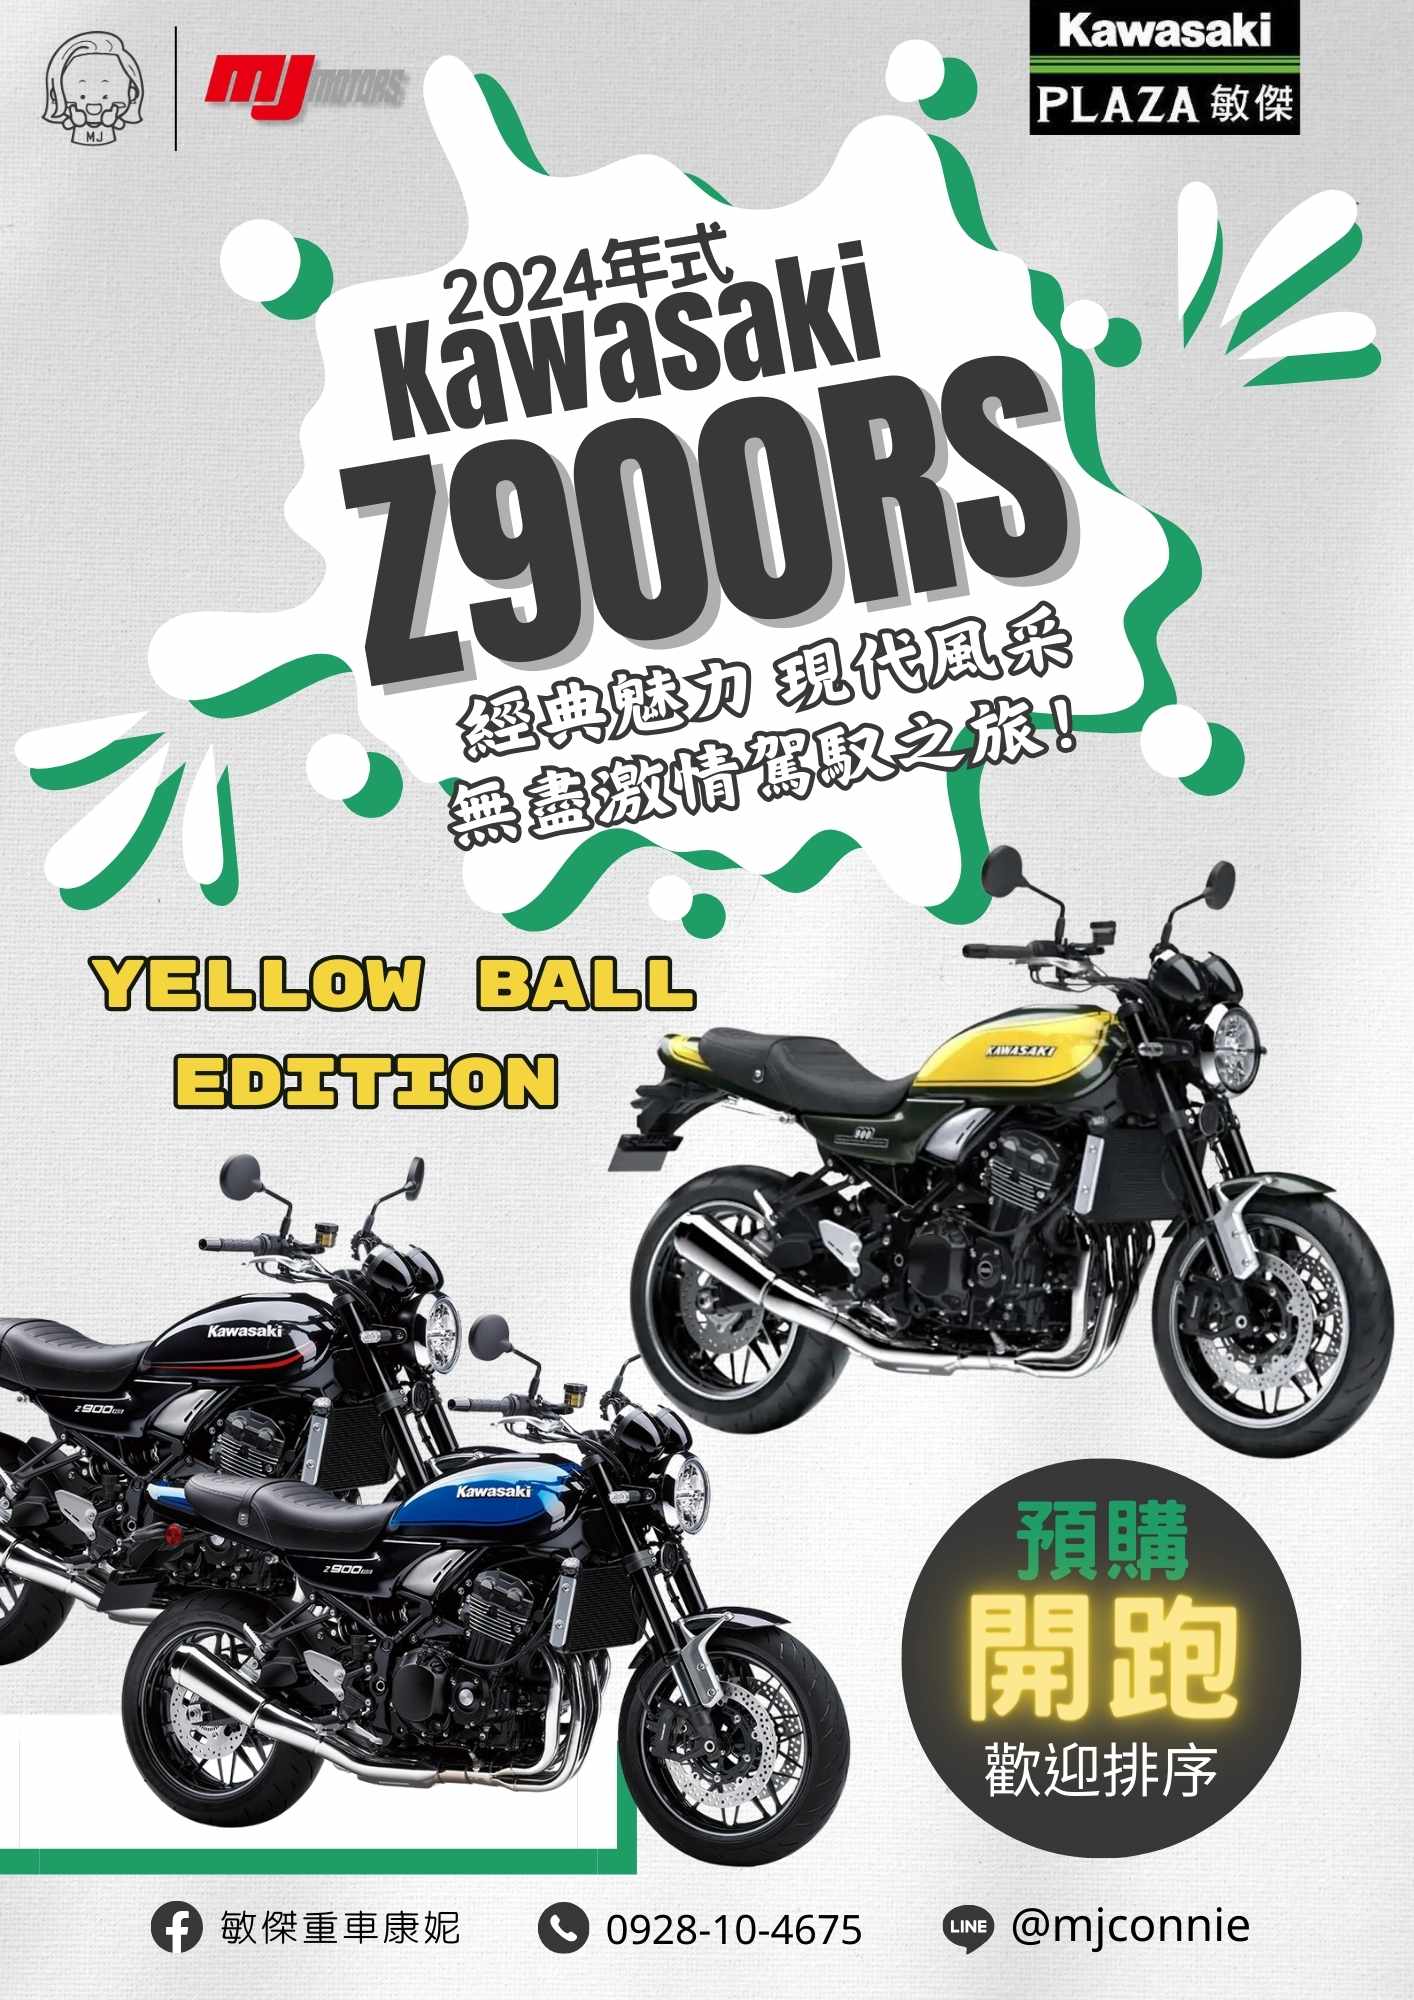 KAWASAKI Z900RS新車出售中 『敏傑康妮』KAWASAKI Z900RS 2024配色 全新三色 任您挑選 現在馬上跟康妮排序卡位!! | 敏傑車業資深銷售專員 康妮 Connie